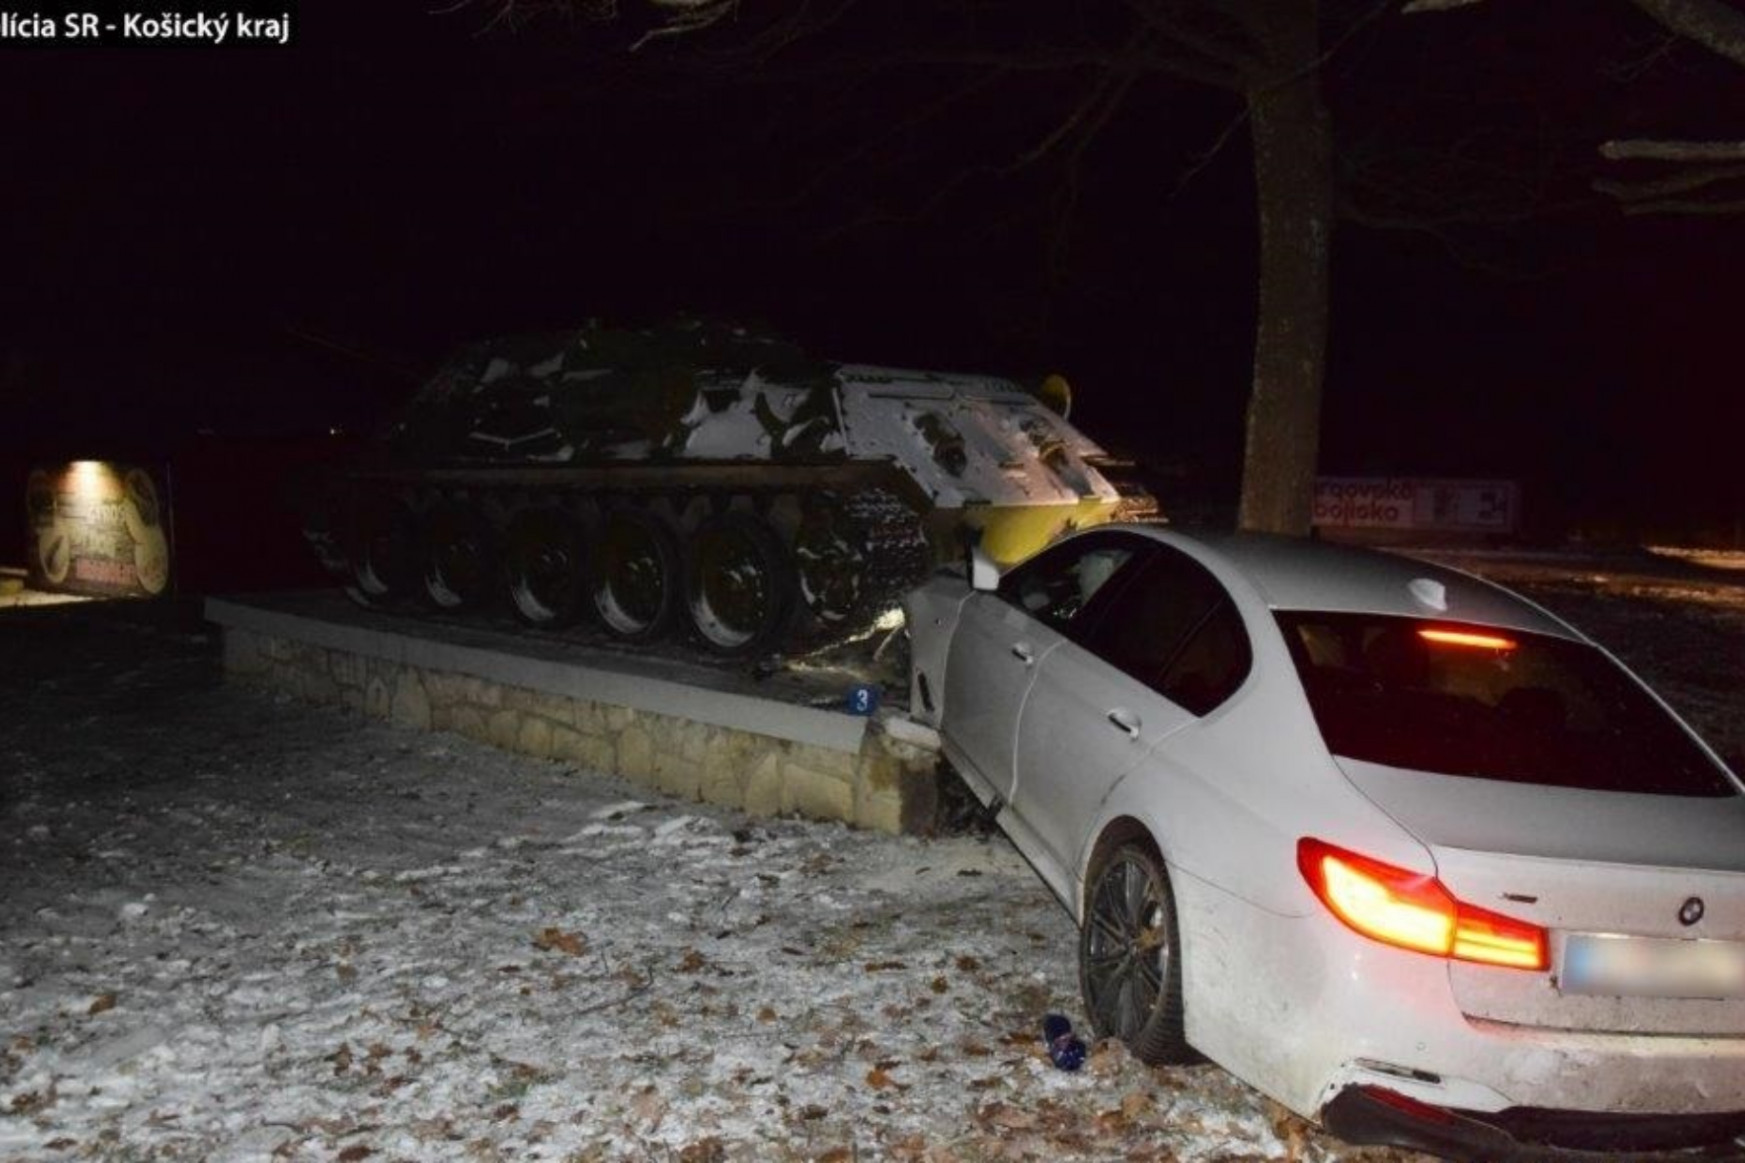 Szovjet páncélosba
rohant egy szlovák BMW, ketten súlyosan megsérültek